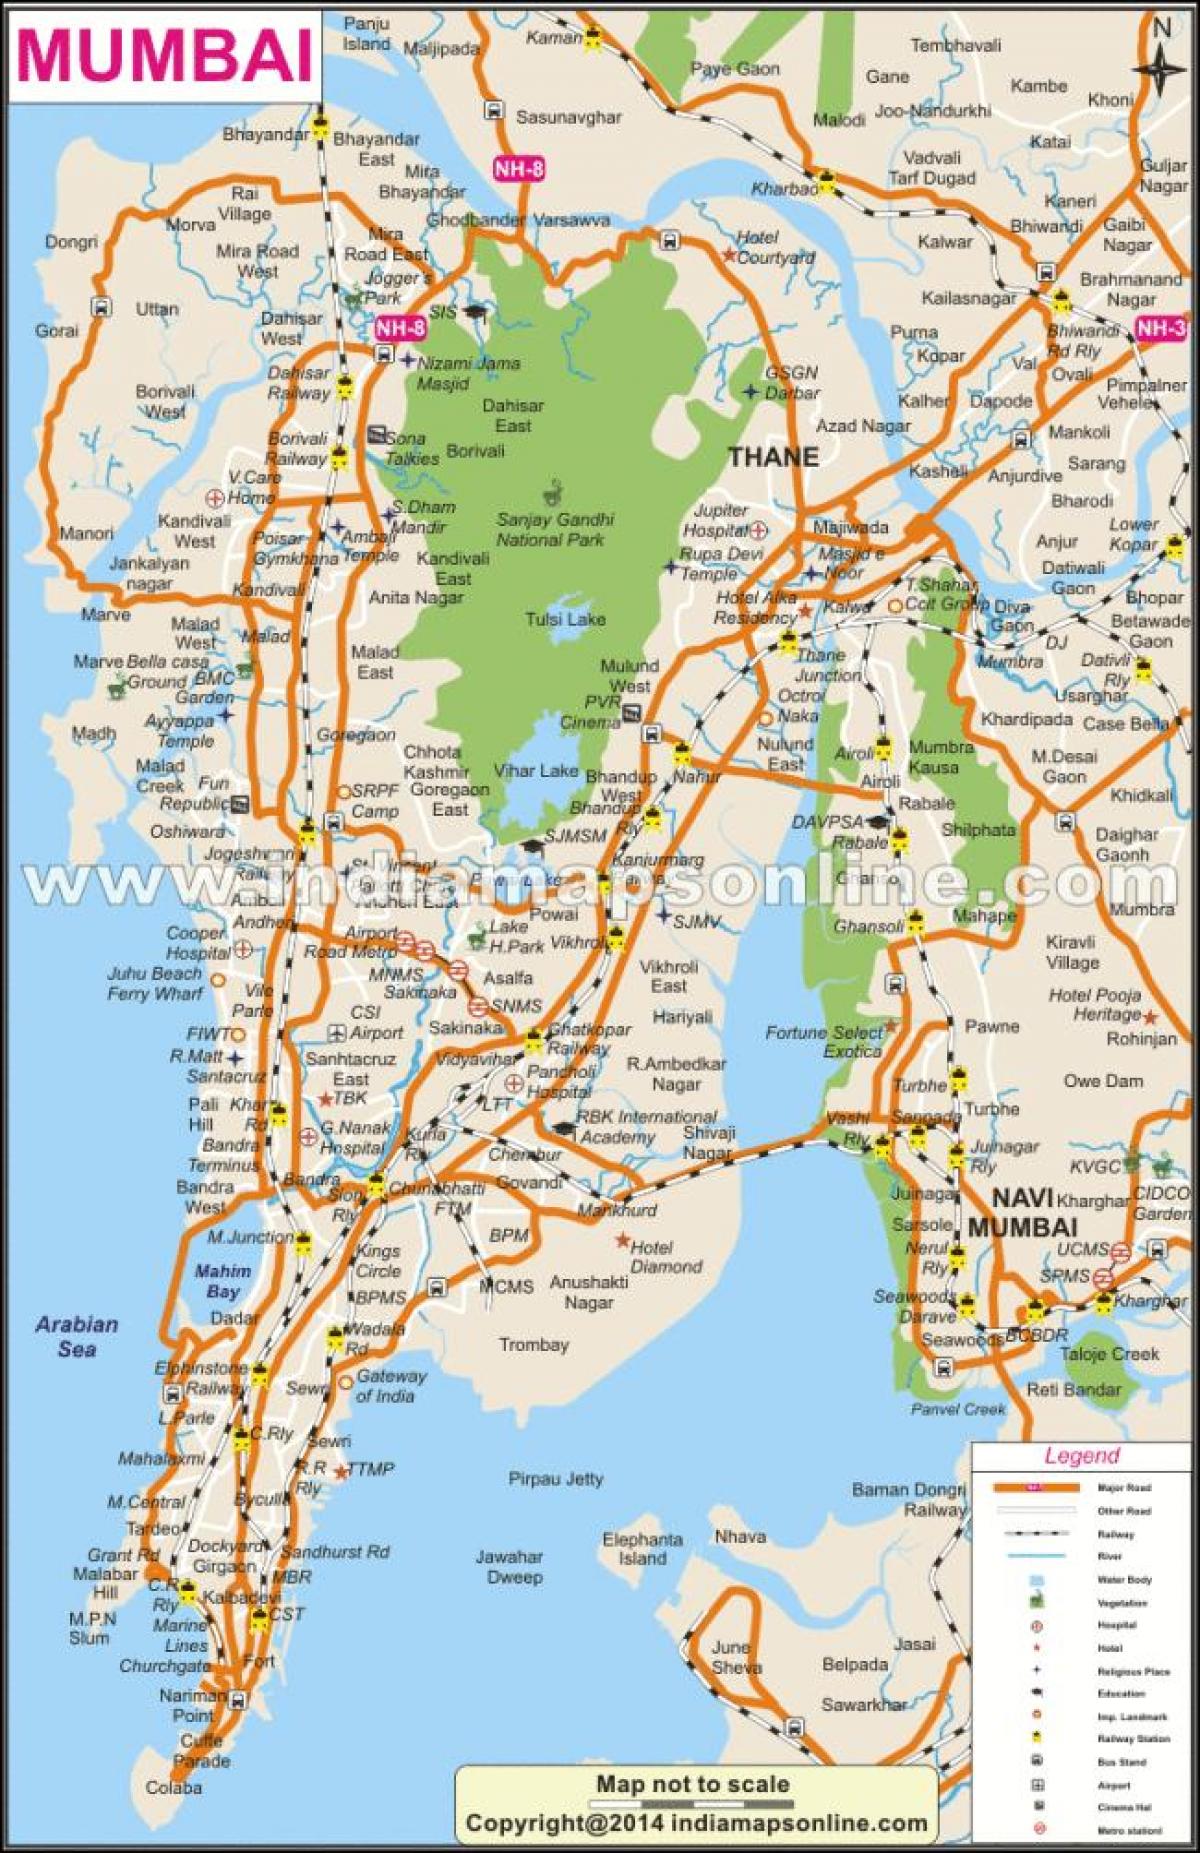 מפה של מומבאי המקומית